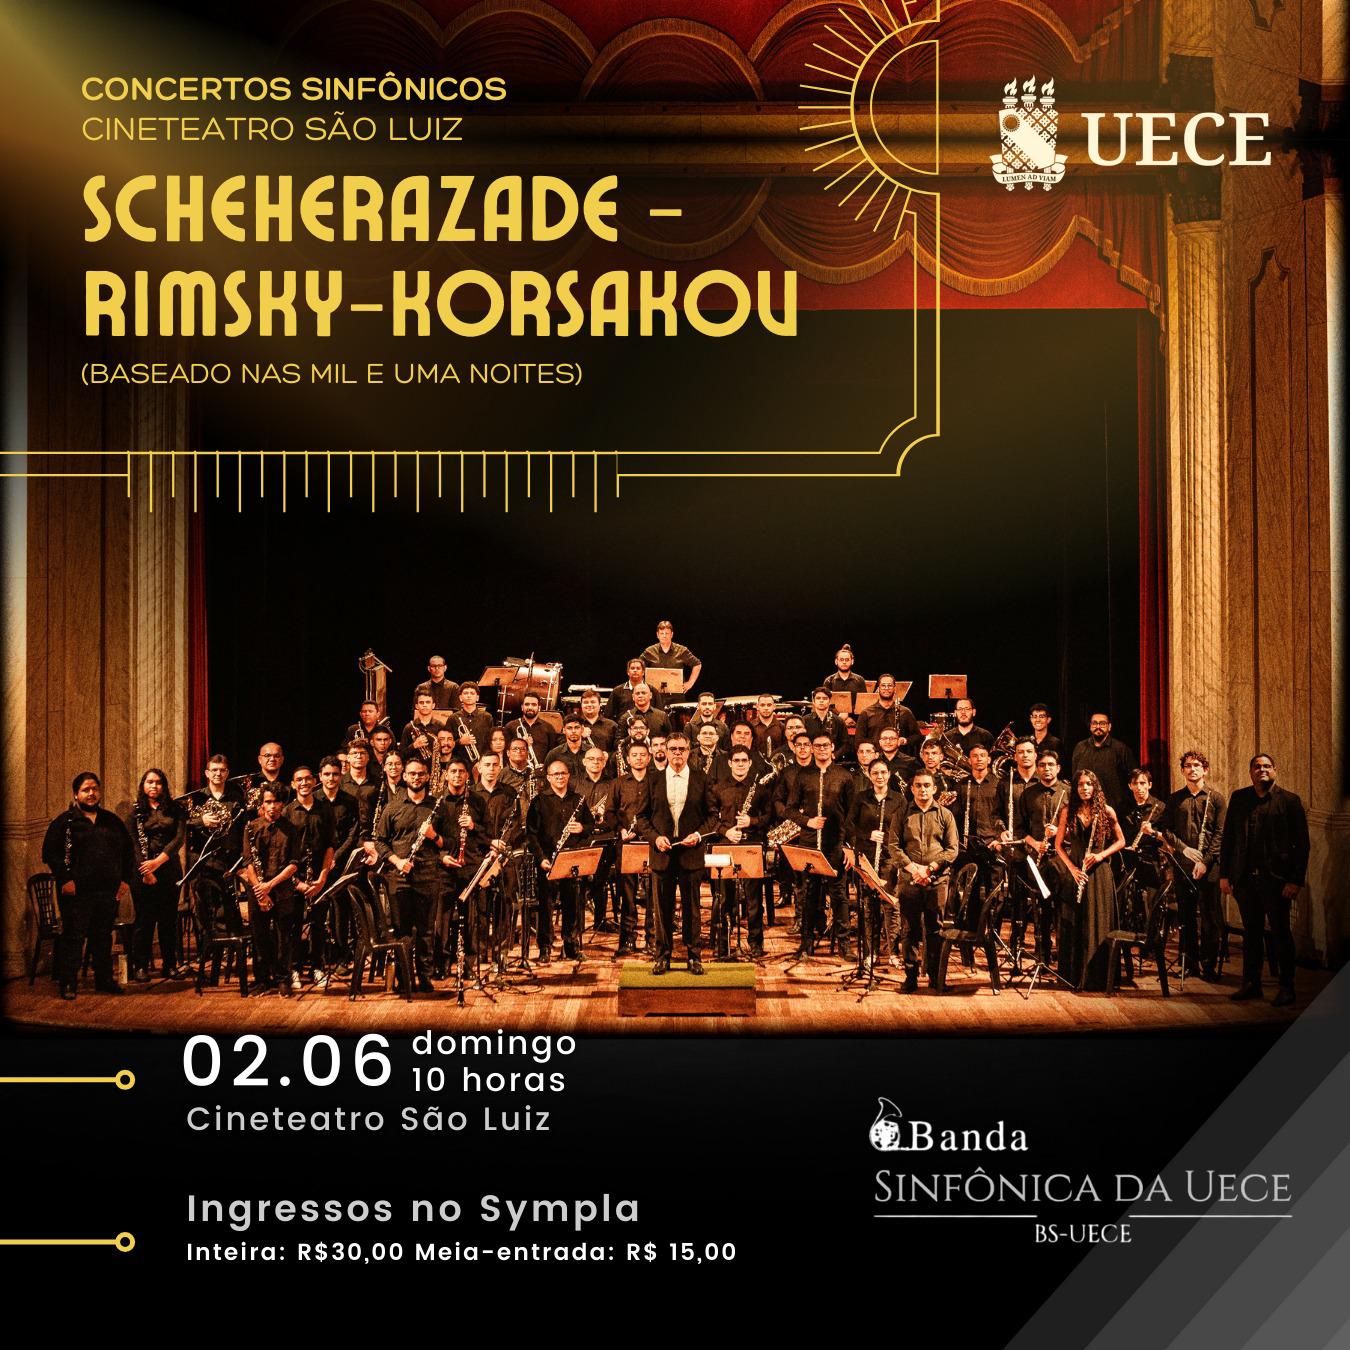 Banda Sinfônica da Uece apresenta concerto baseado nos contos árabes “As mil e uma noites”